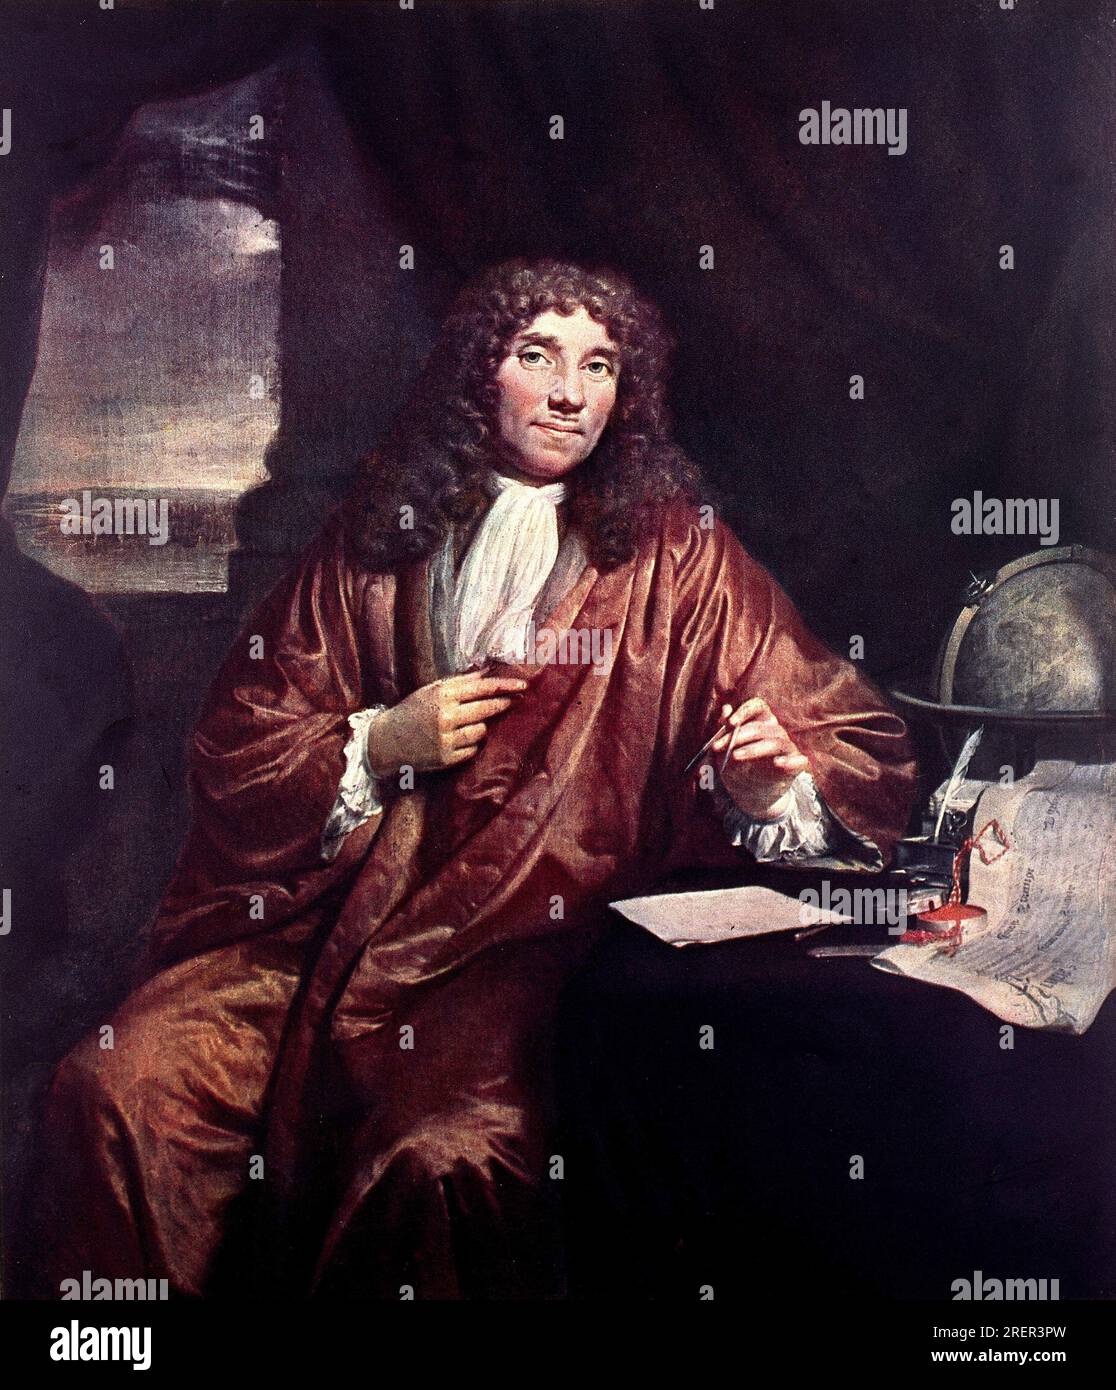 Porträt des Antonie van Leeuwenhoek (1632-1723) 17th century by Jan Verkolje Stock Photo